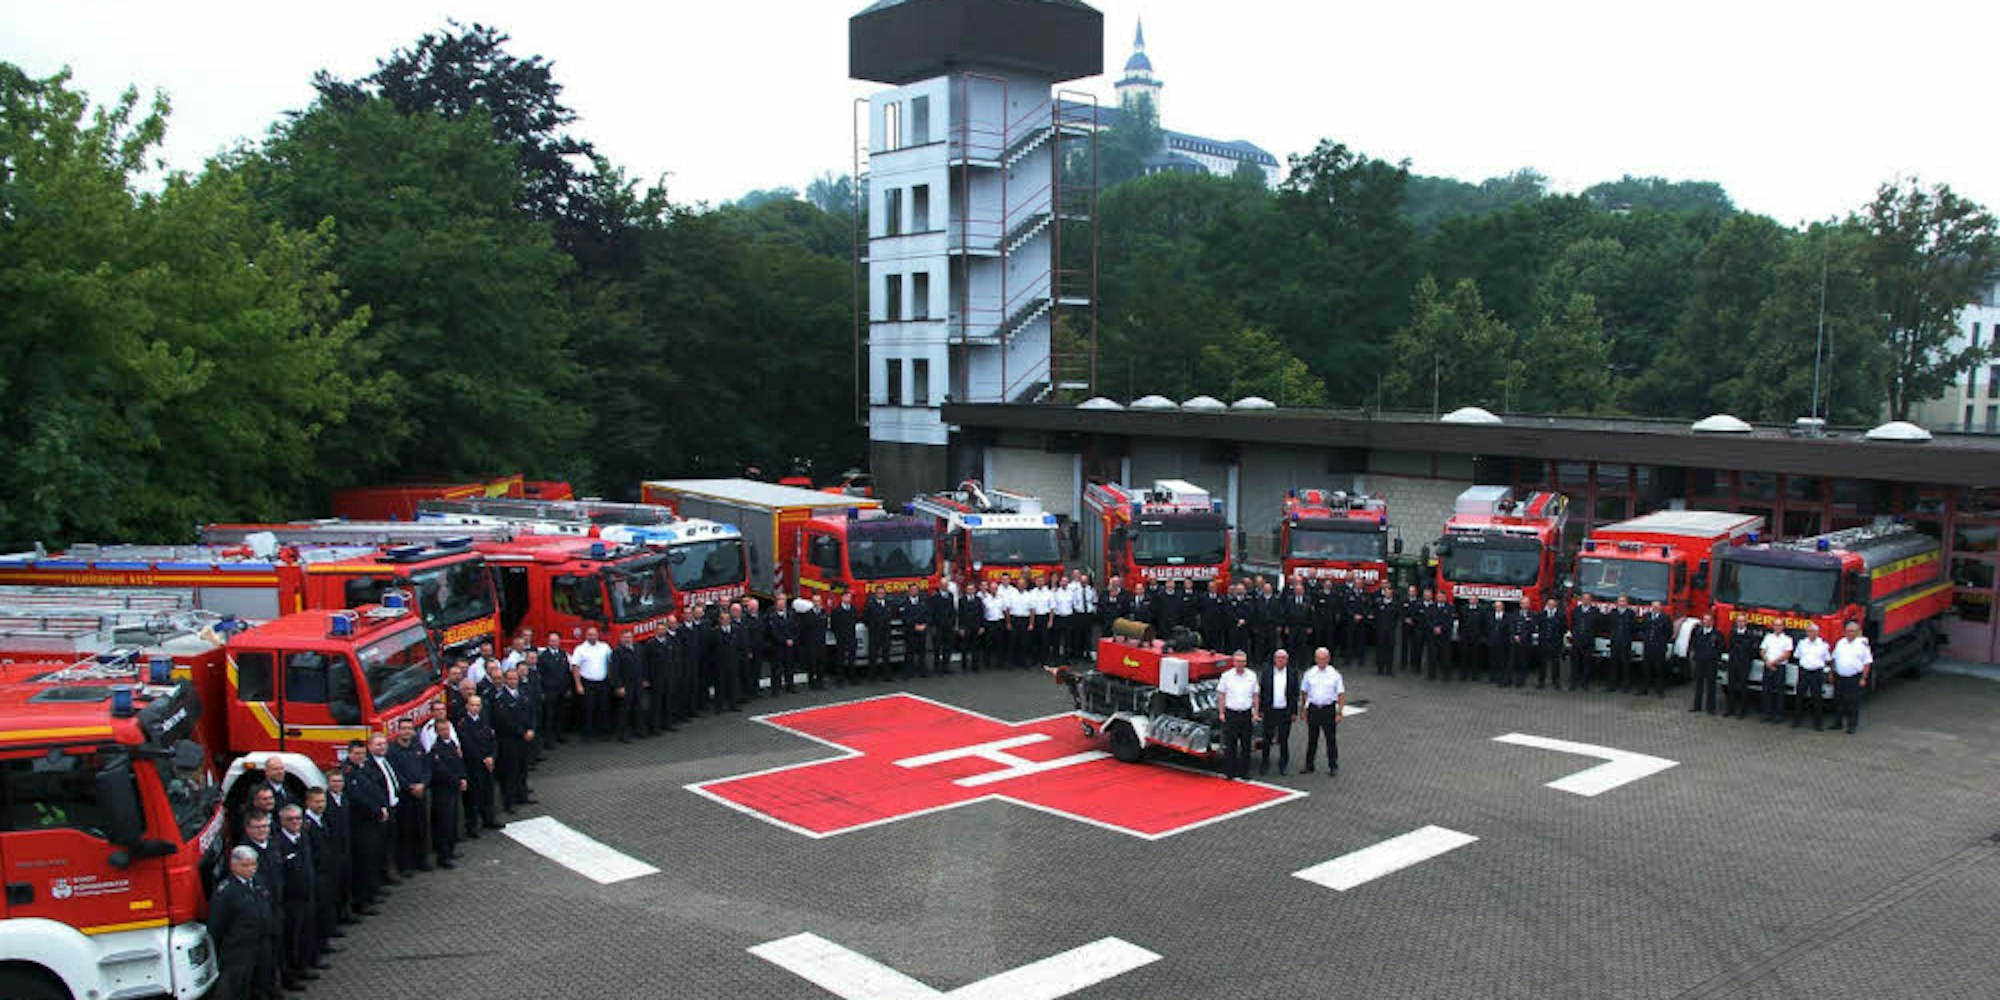 Die neue Alarm-Bereitschaft Waldbrand samt ihren Fahrzeugen kam in Siegburg zu einer Schulung zusammen.